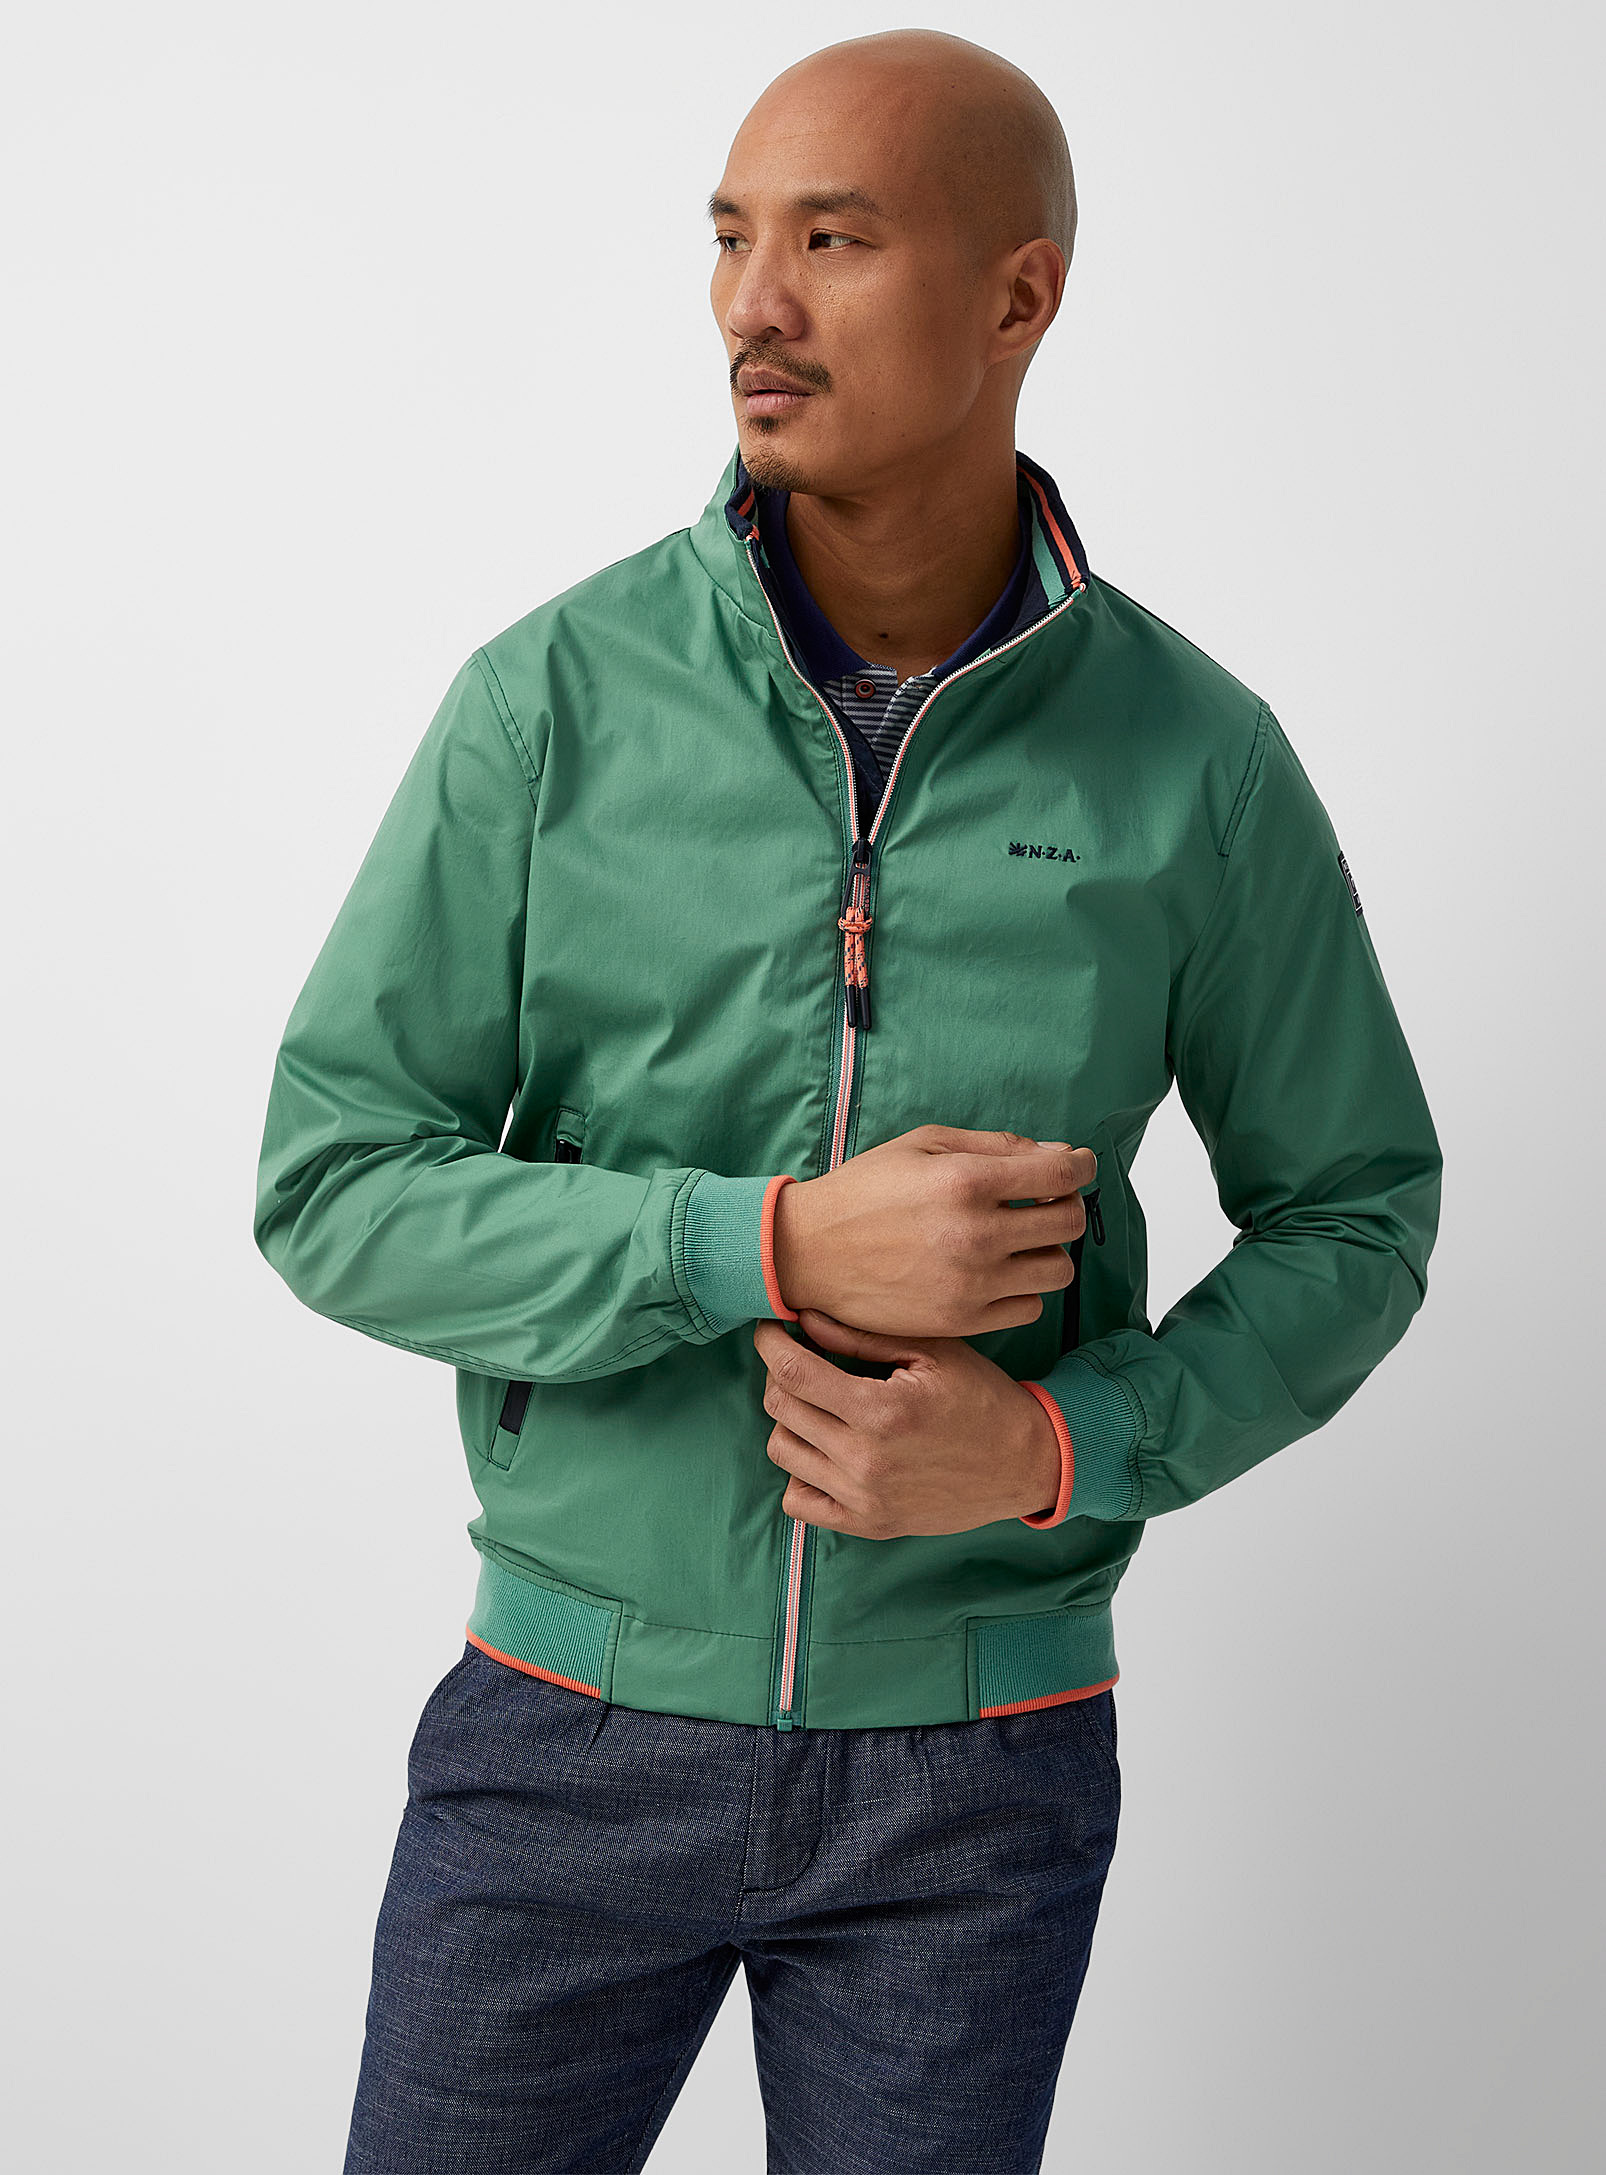 New Zealand Auckland - Men's Bold green high-neck lightweight jacket